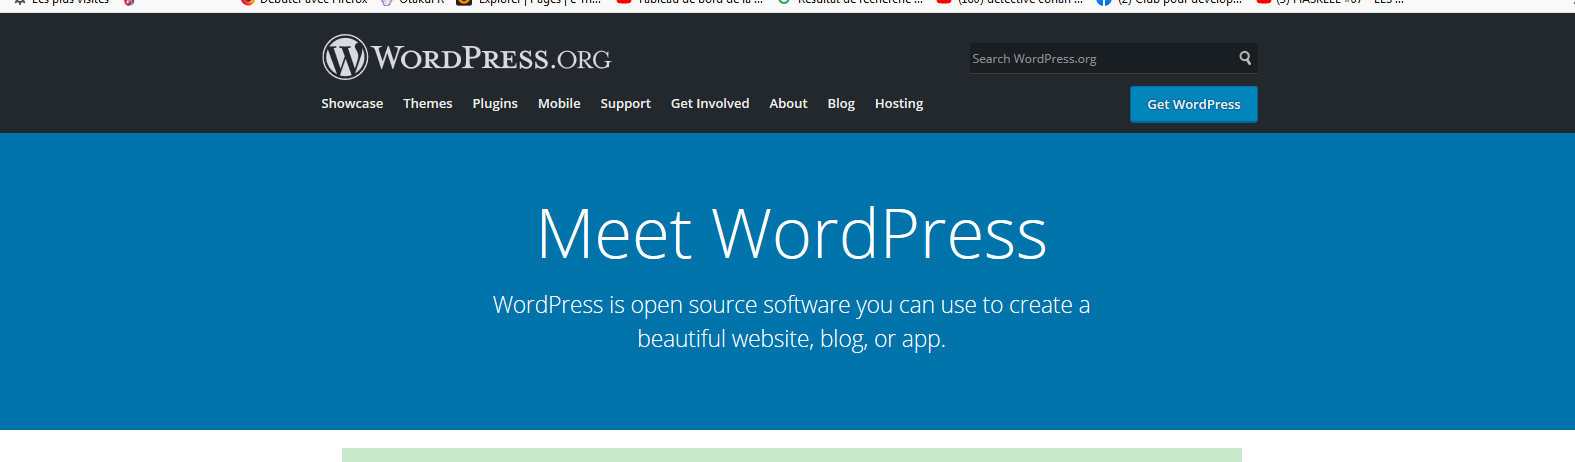 Pandacodeur blog tool publishing platform and cms wordpress org